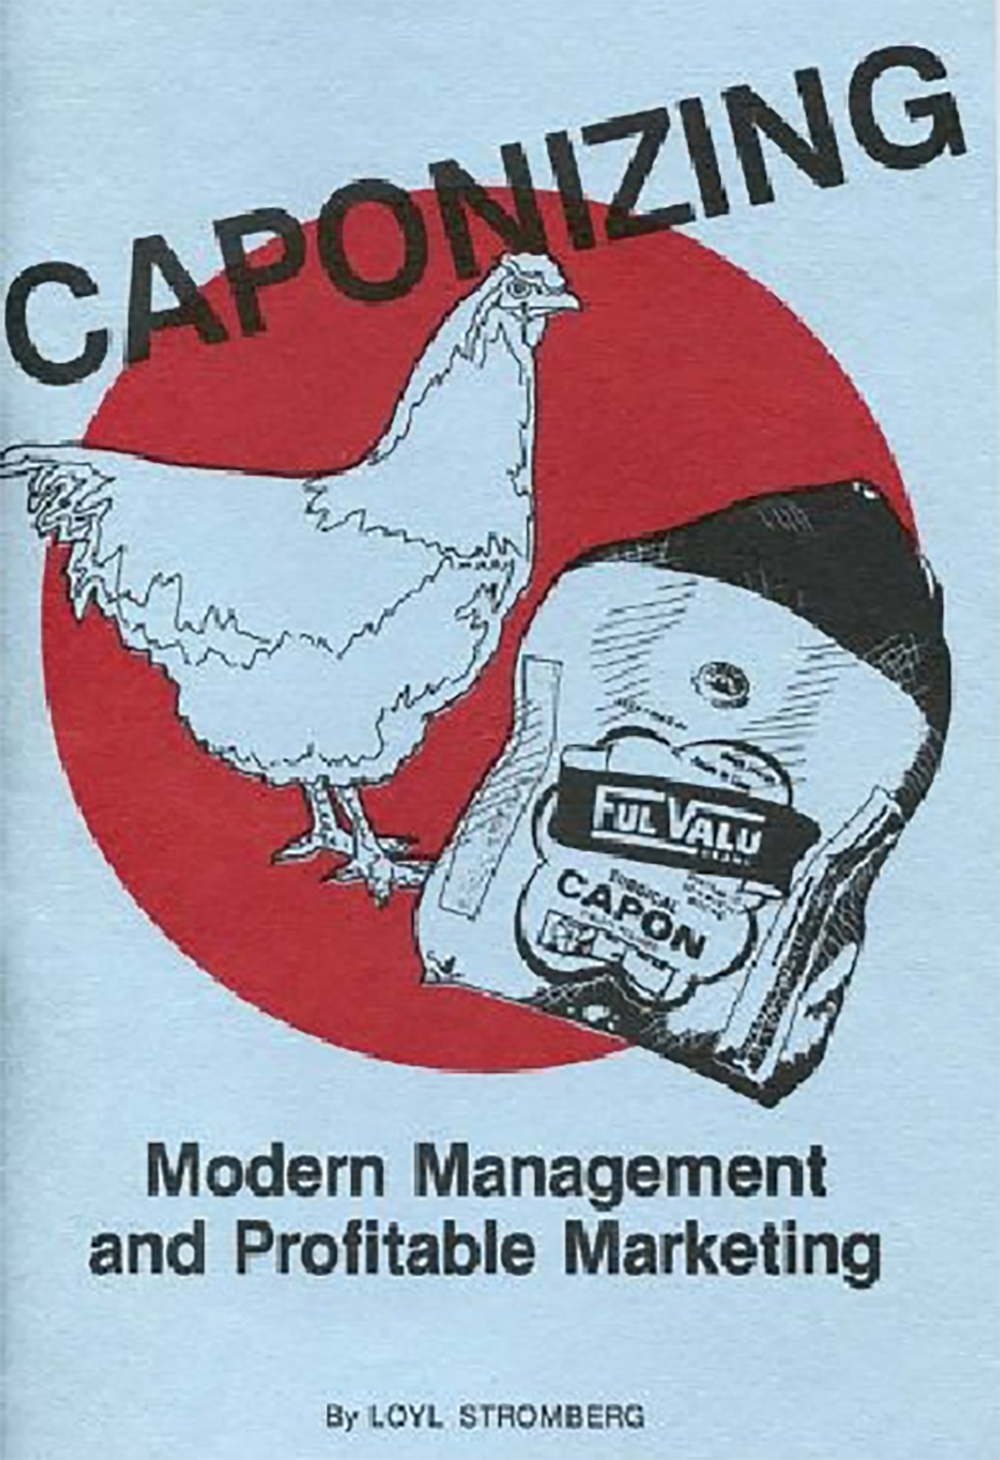 Caponizing: Modern Management and Profitable Marketing